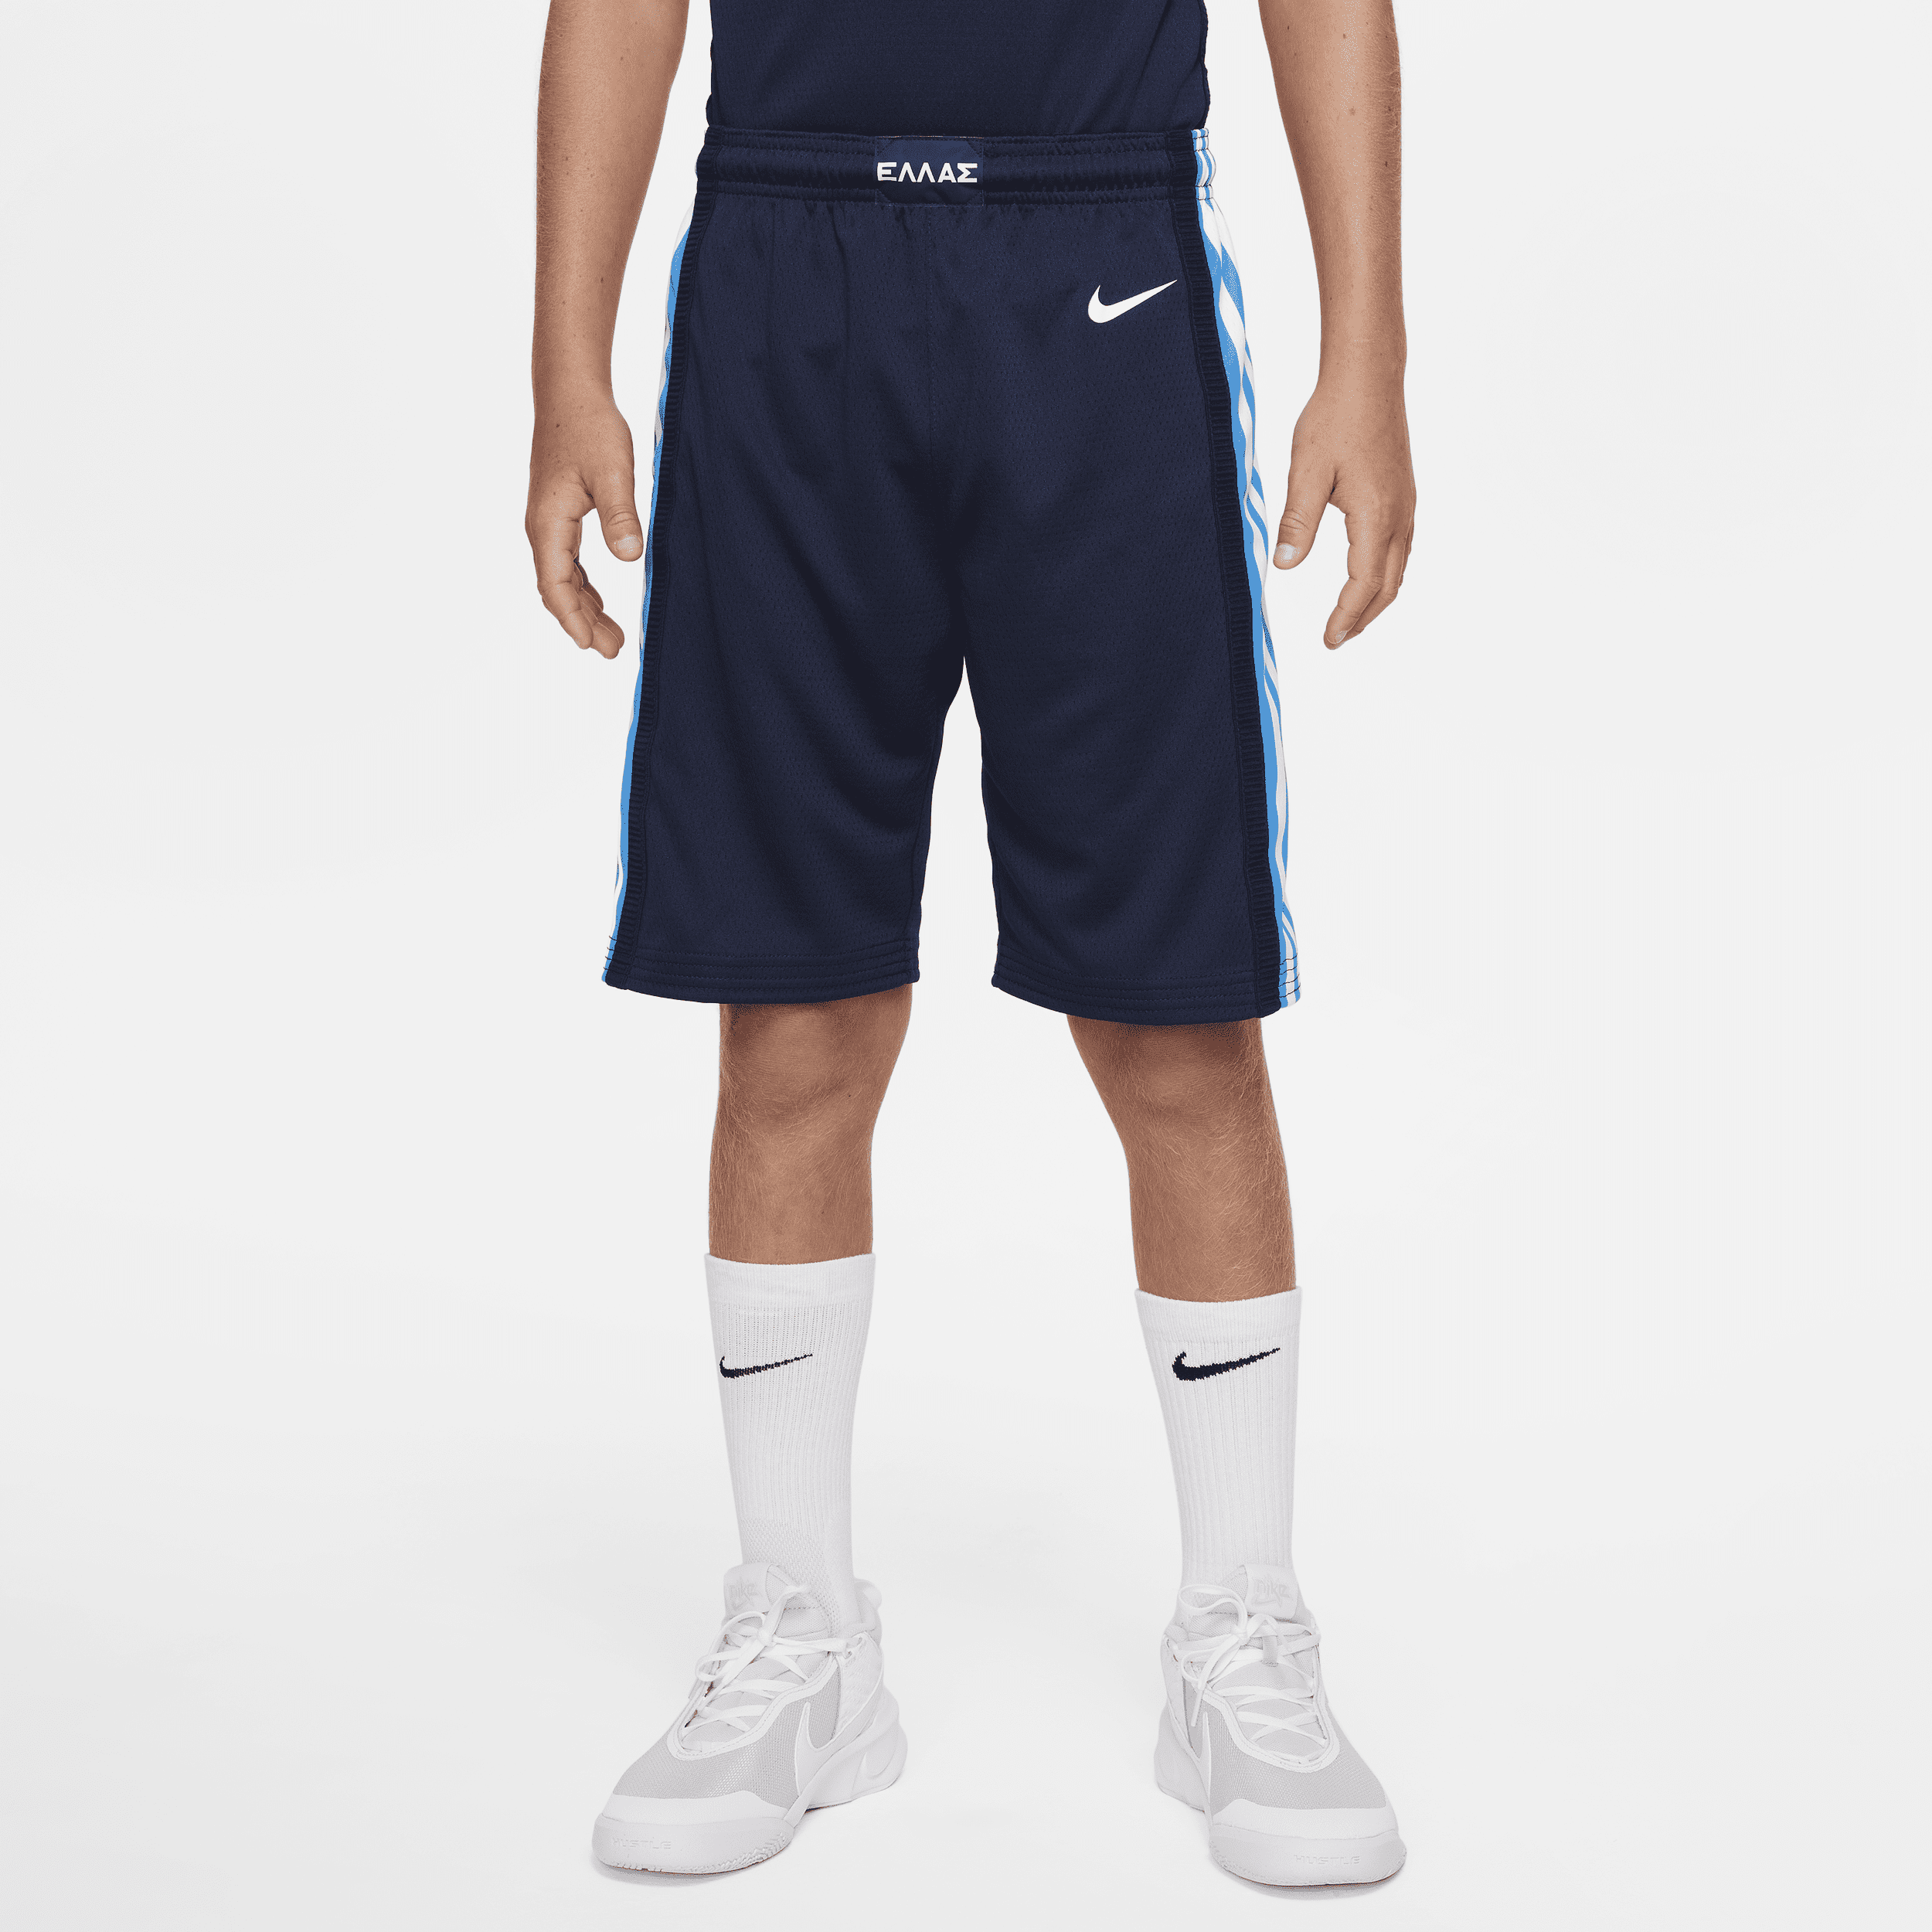 Grecia (asfalto) Pantalón corto de baloncesto Nike - Niño/a - Azul